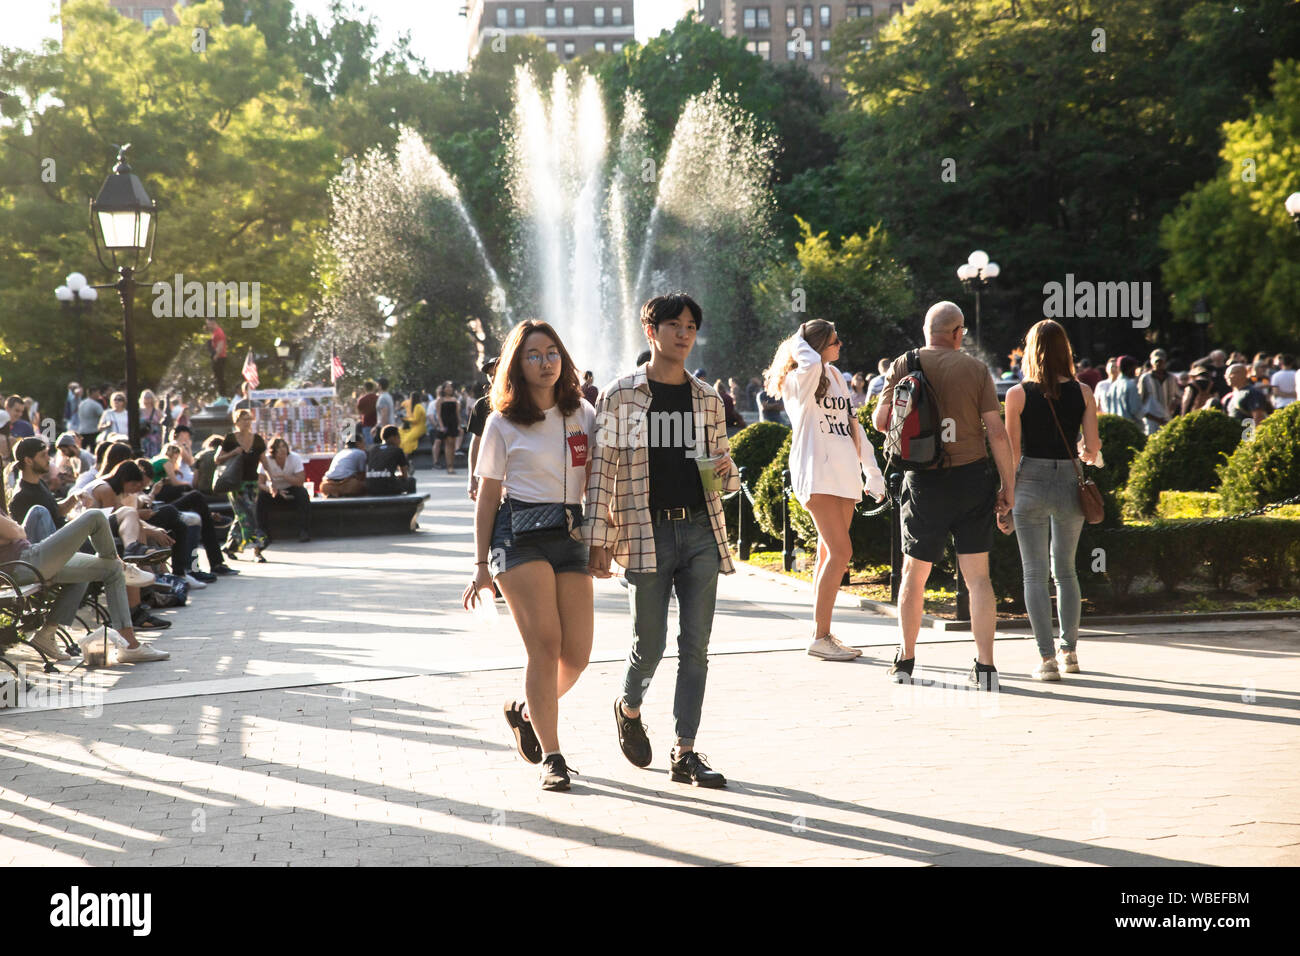 La VILLE DE NEW YORK, NY - 24 août 2019 : Scène du Washington Square Park à Greenwich Village, Manhattan sur un après-midi d'été. Banque D'Images